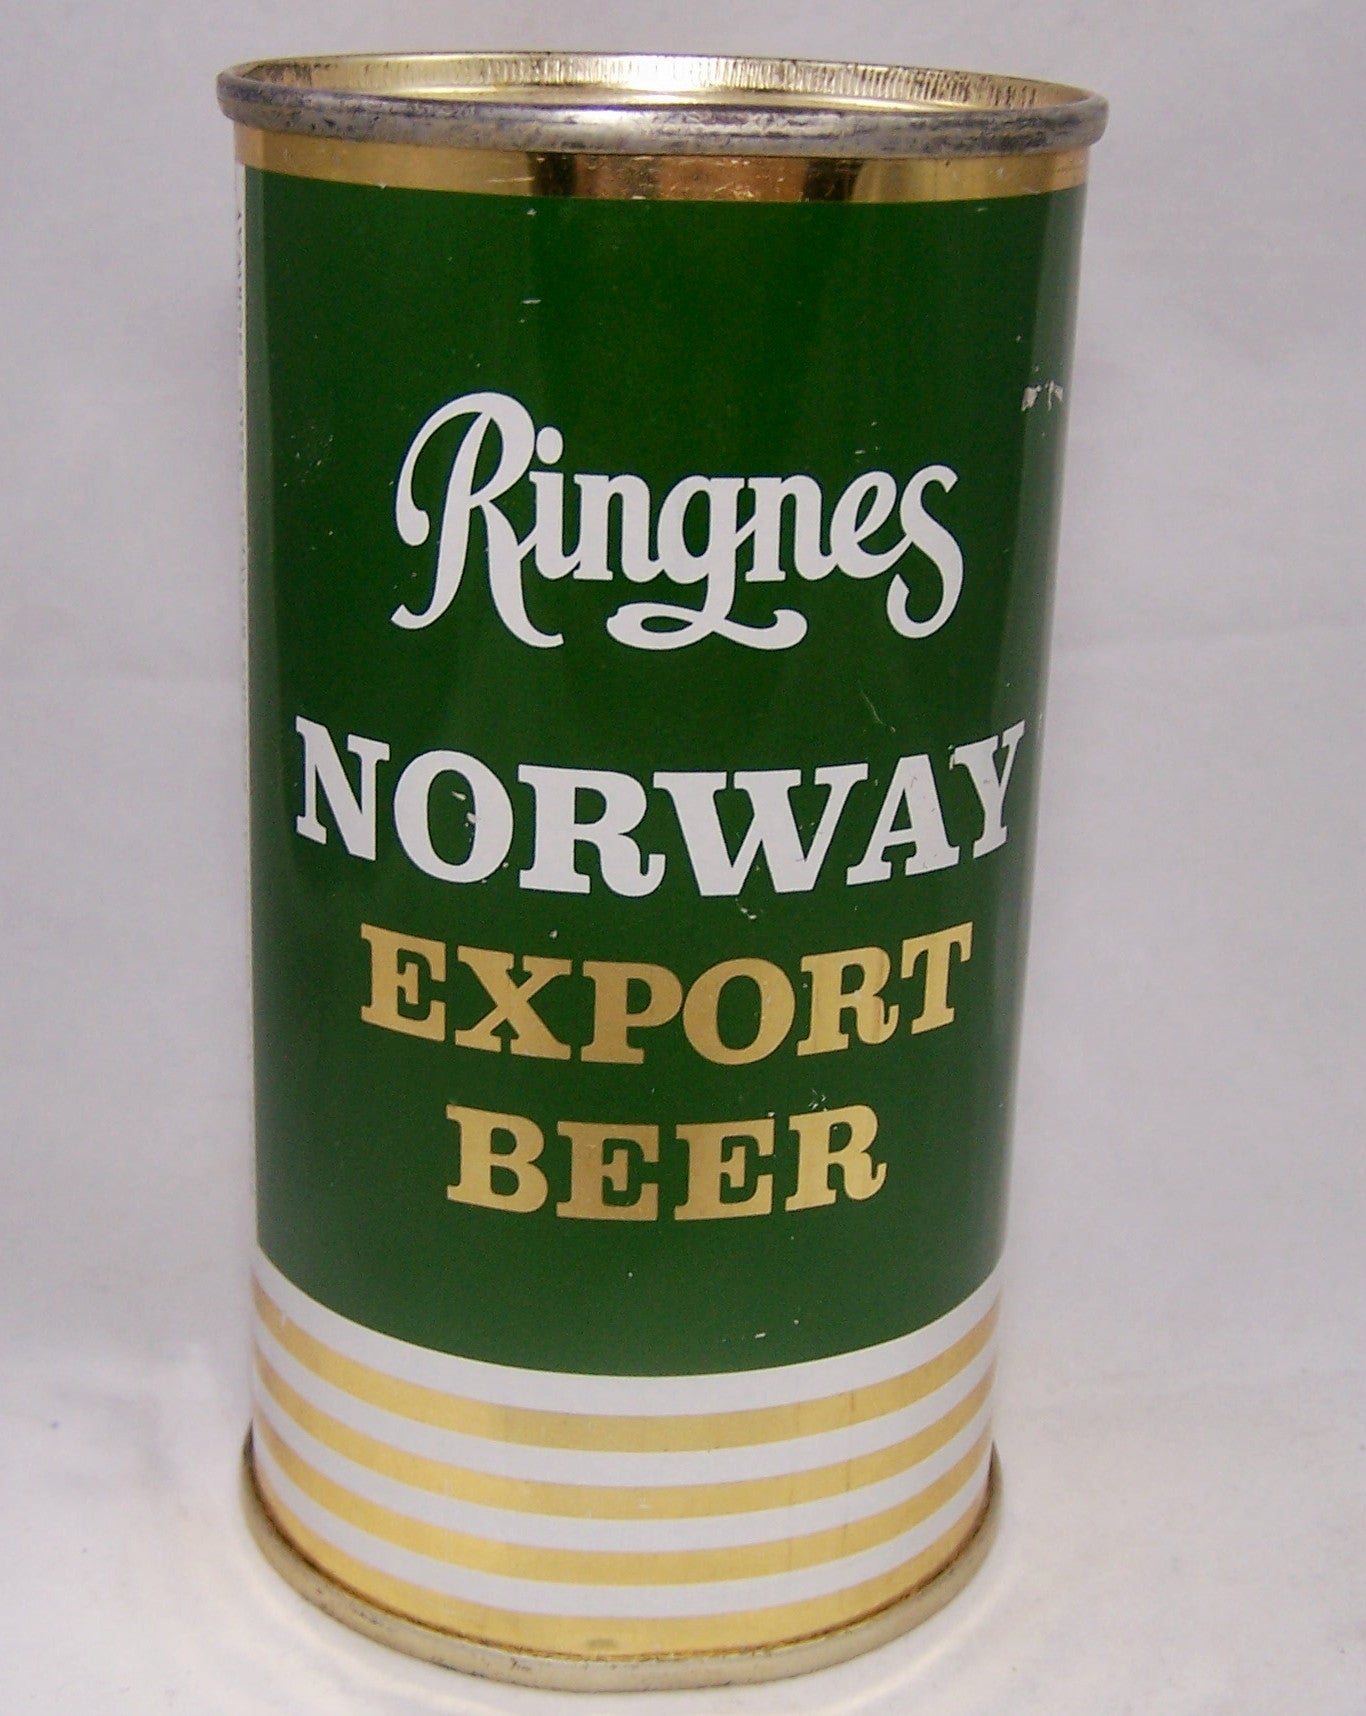 Ringnes Norway Export Beer, Grade 1 to 1/1+ Sold on 04/02/17